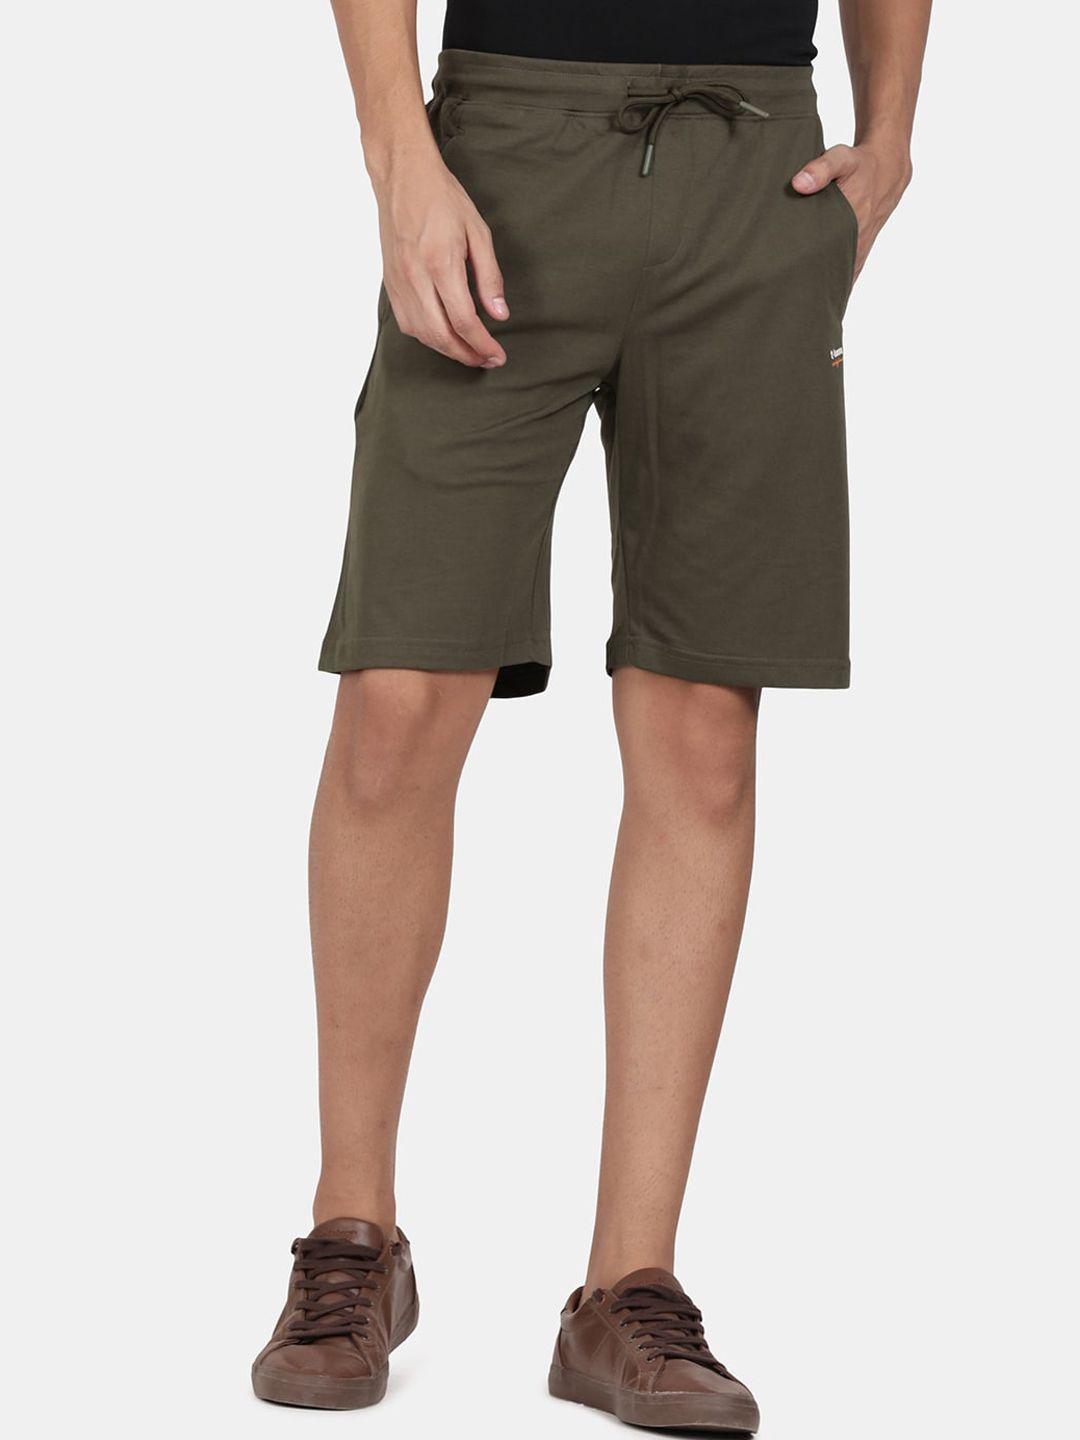 t-base-men-olive-green-shorts